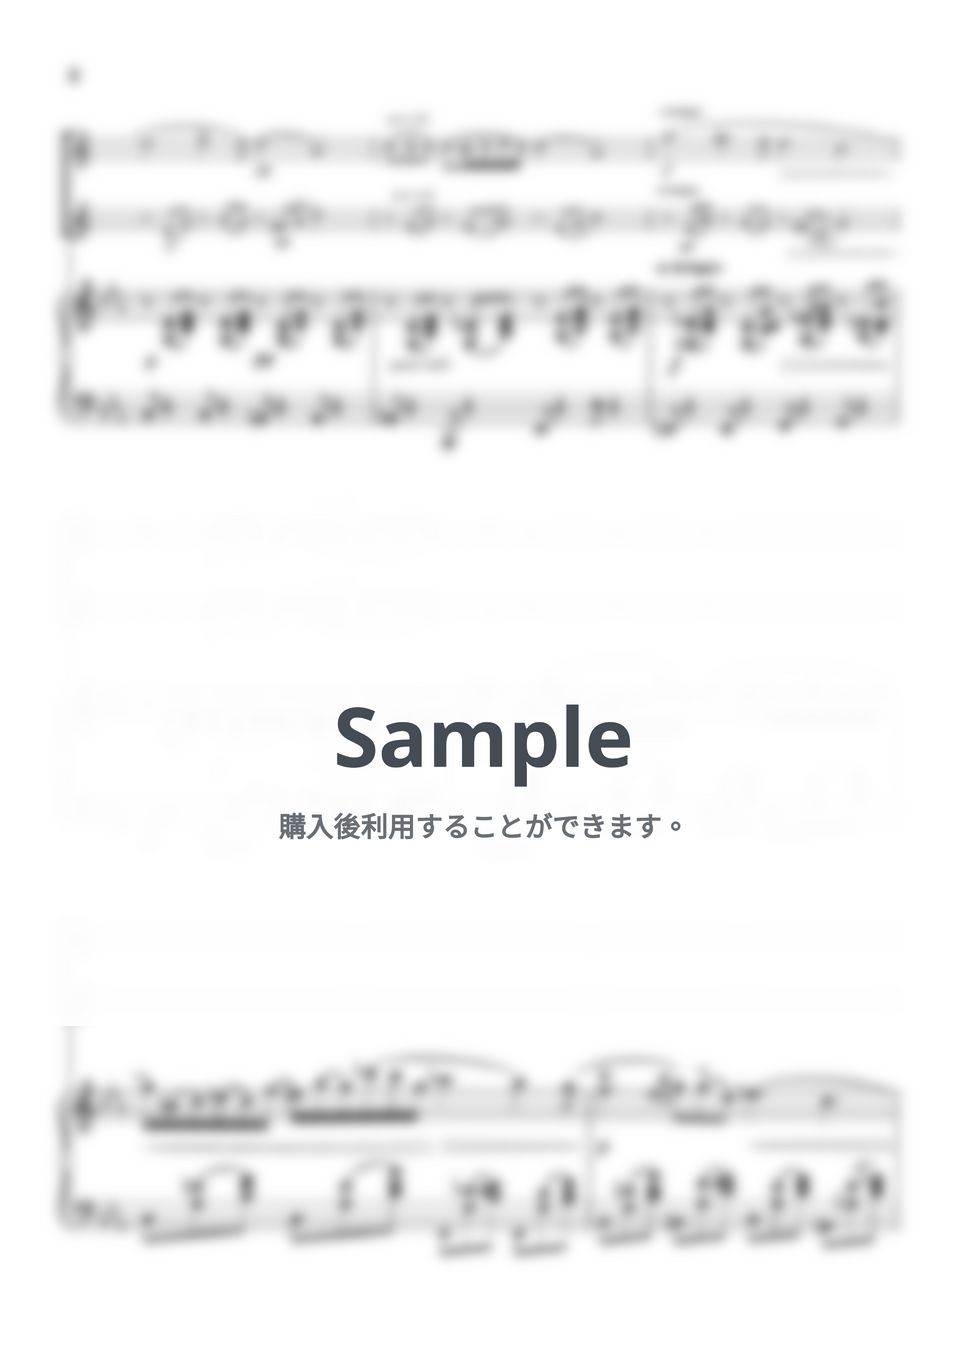 ショパン - ノクターン第2番 (ピアノトリオ/ソプラノフルートデュオ) by pfkaori